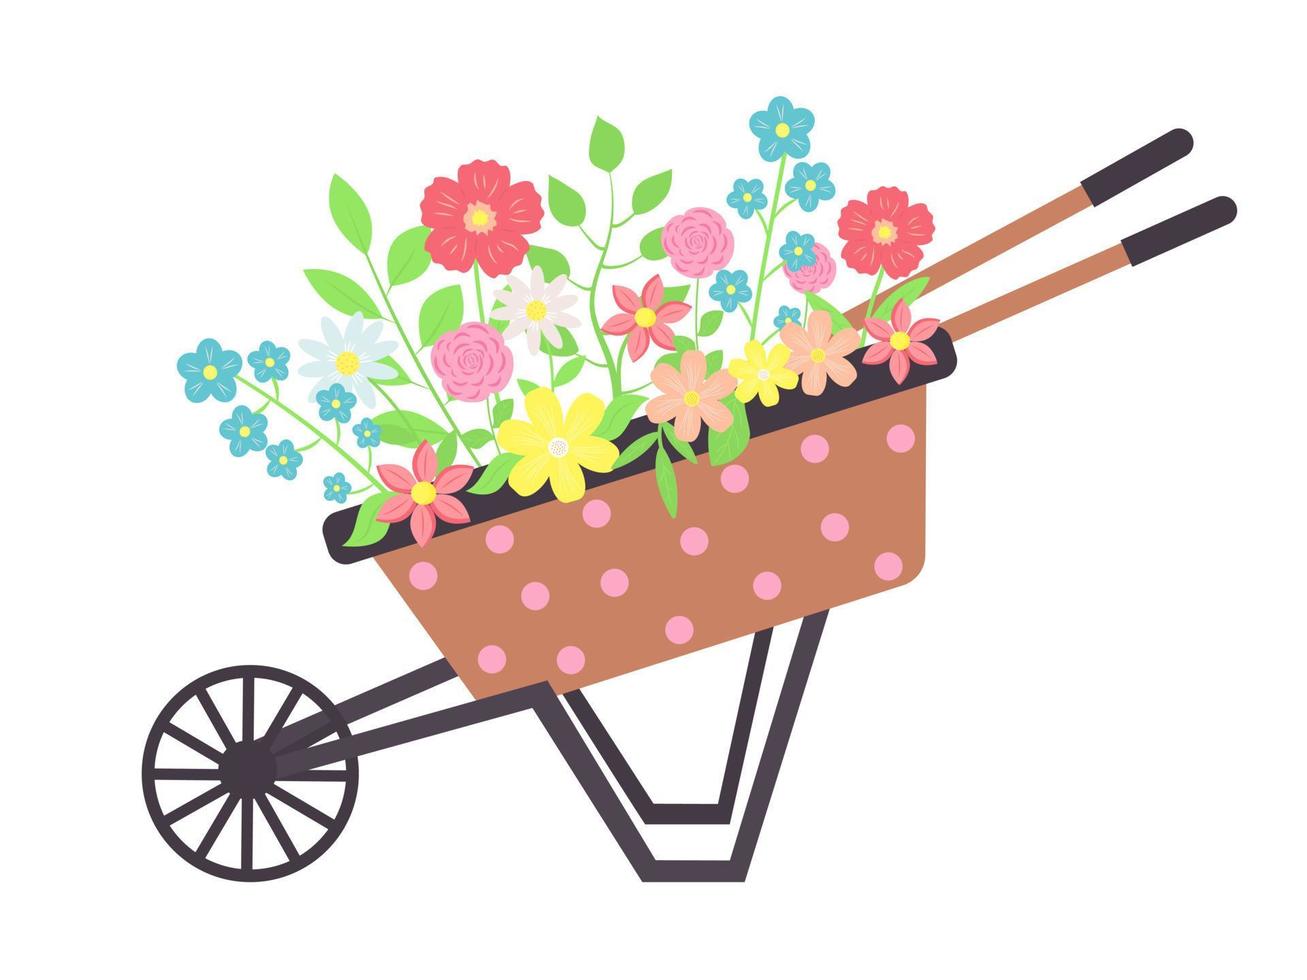 carrinho de bolinhas de madeira vintage com flores. carrinho de mão dos desenhos animados com flores de jardinagem. vetor